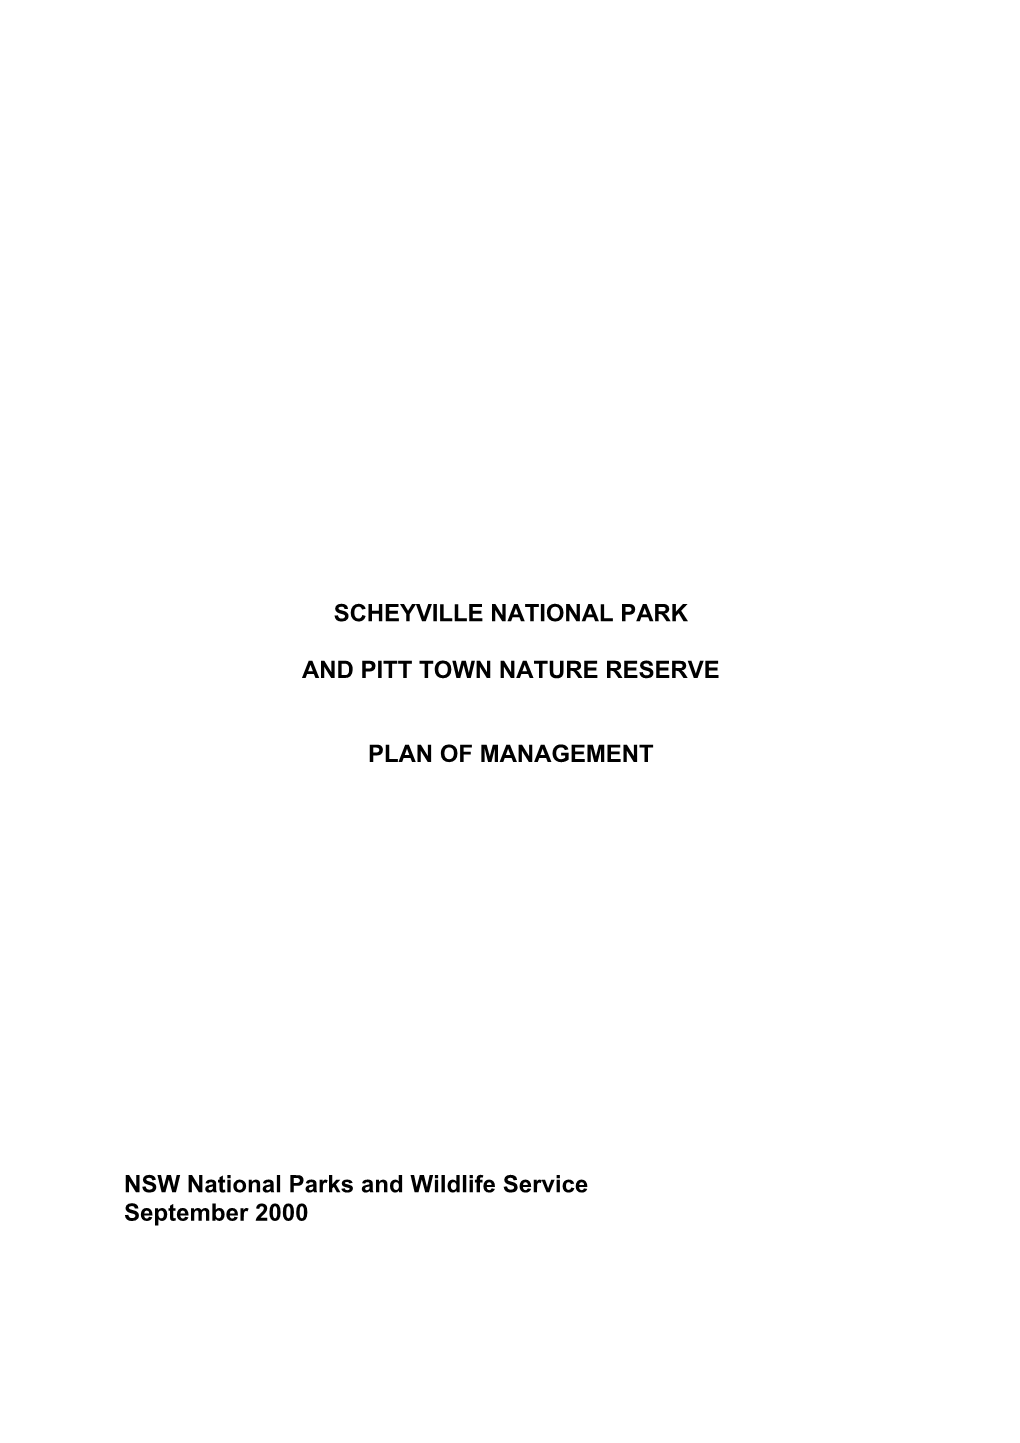 Scheyville National Park and Pitt Town Nature